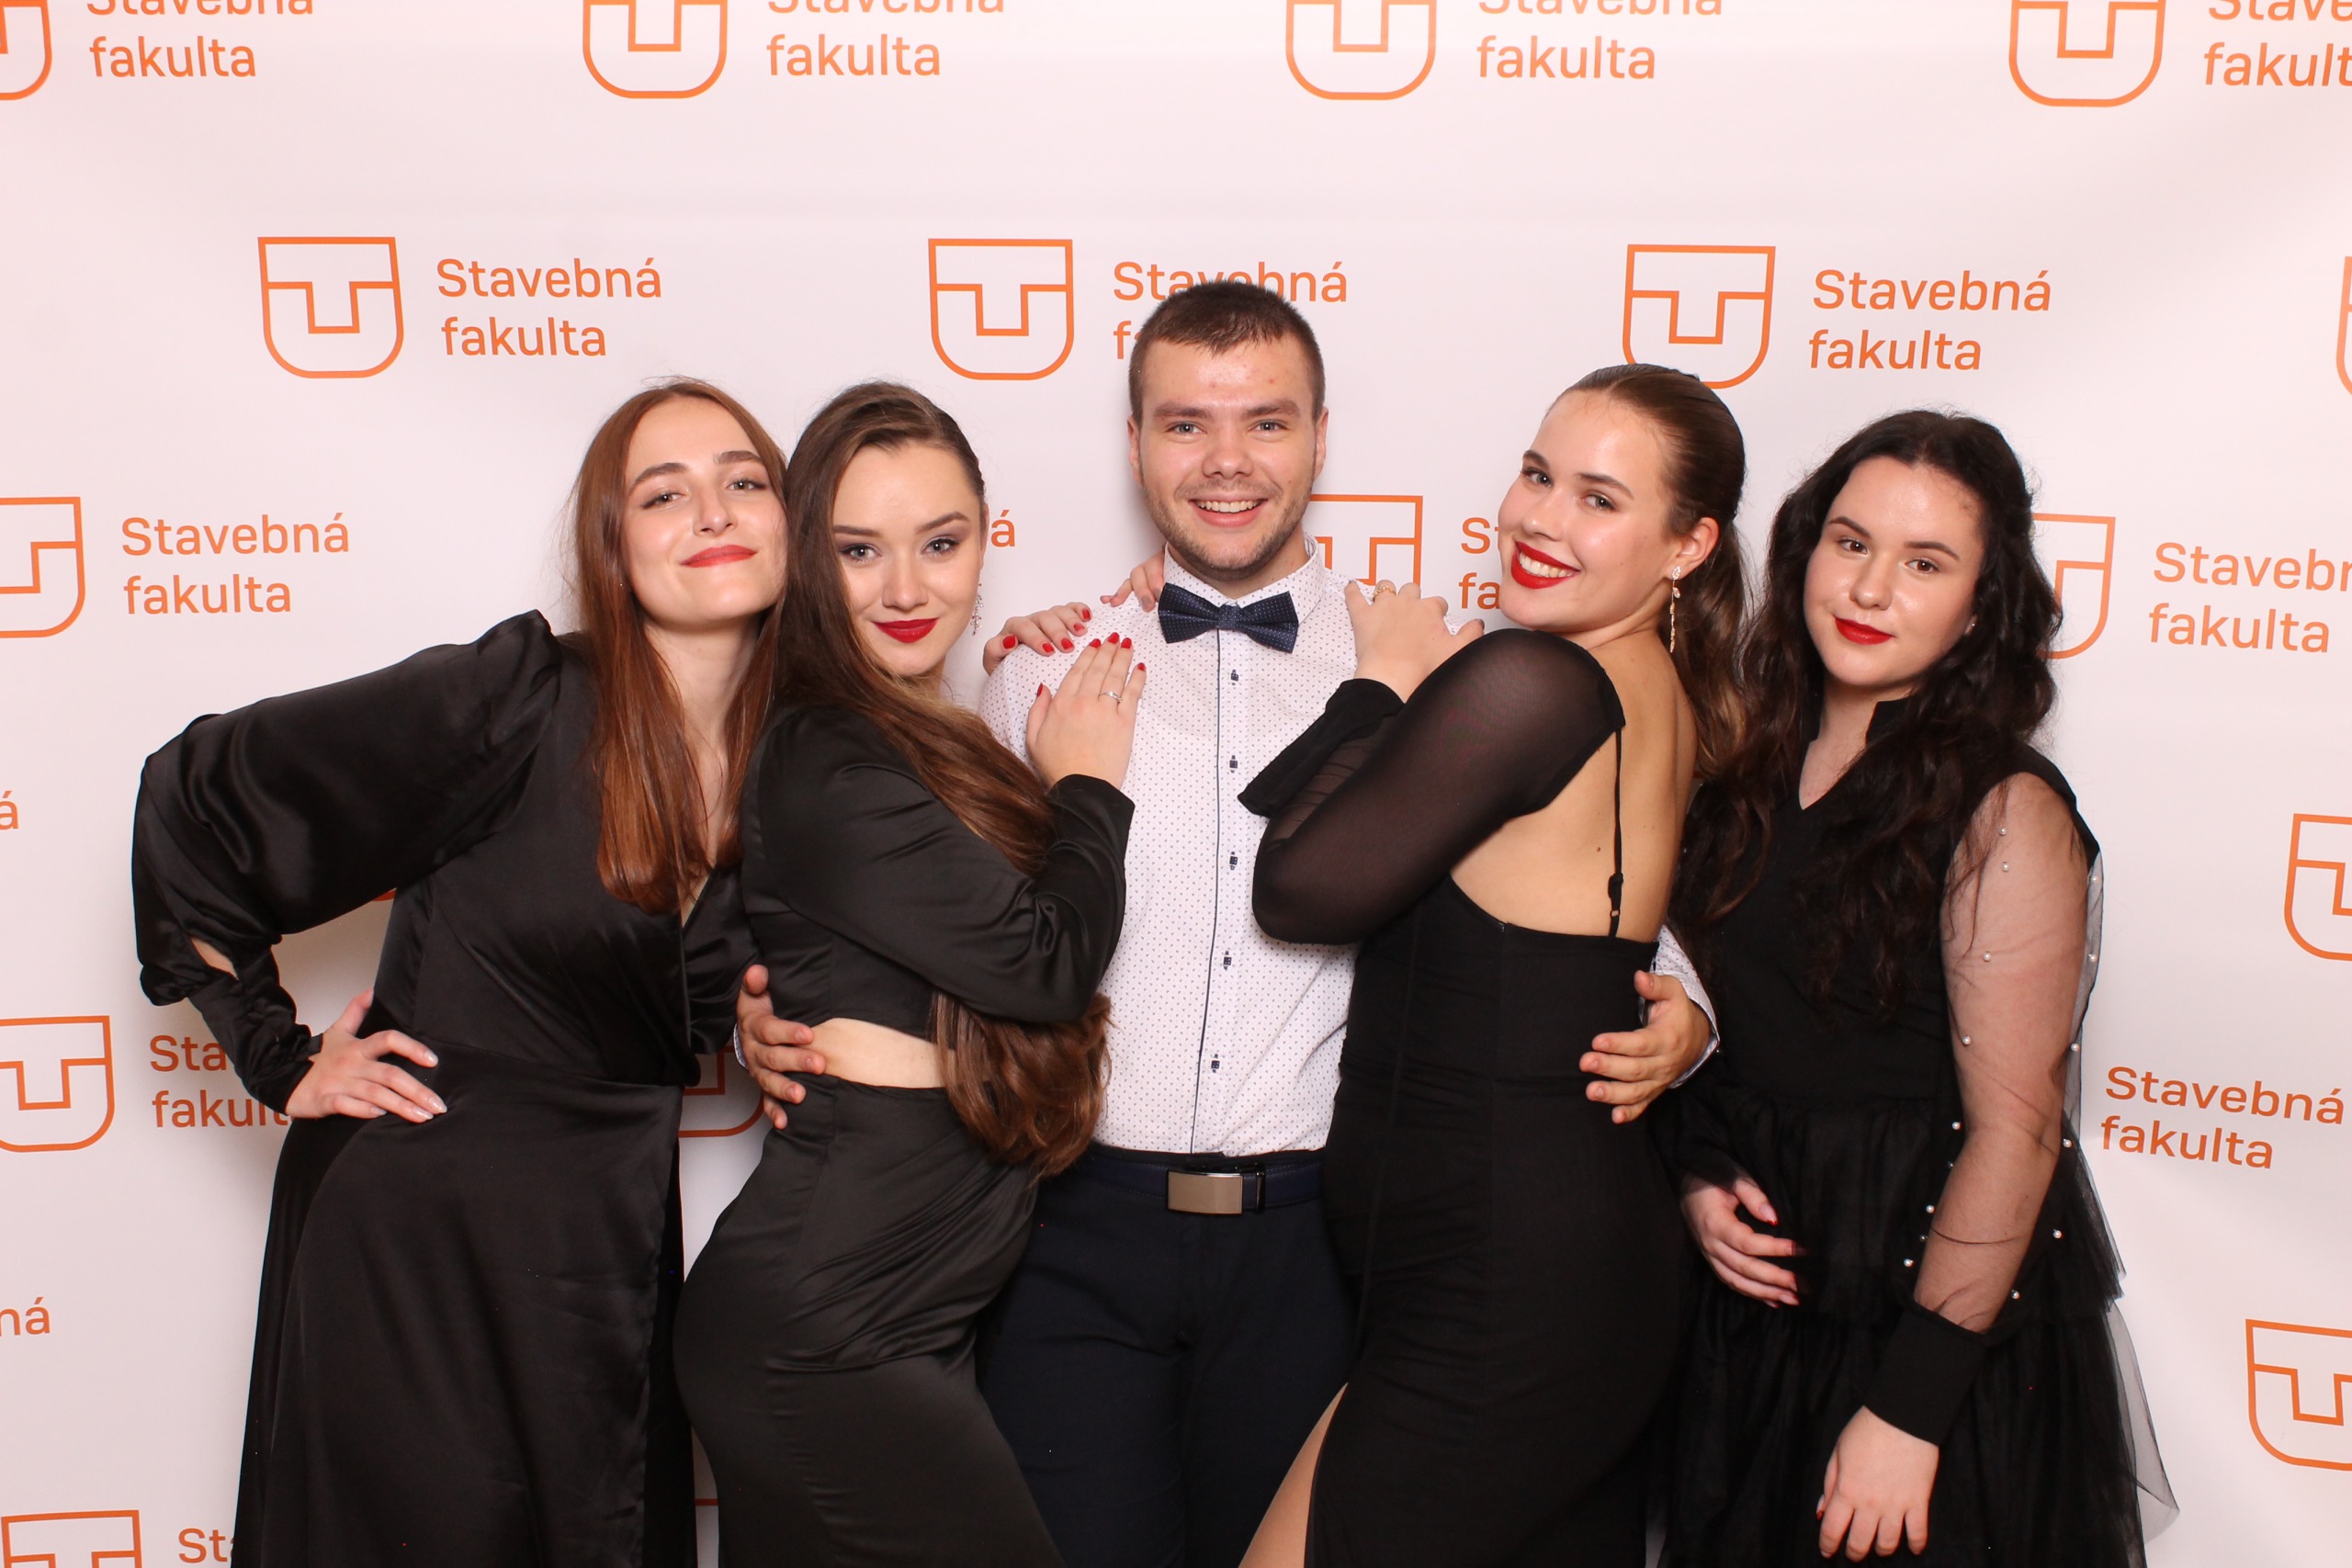 Študenti TUKE sa zabávajú a fotia vo fotobúdke na študentskom plese v Dome umenia v Košiciach.